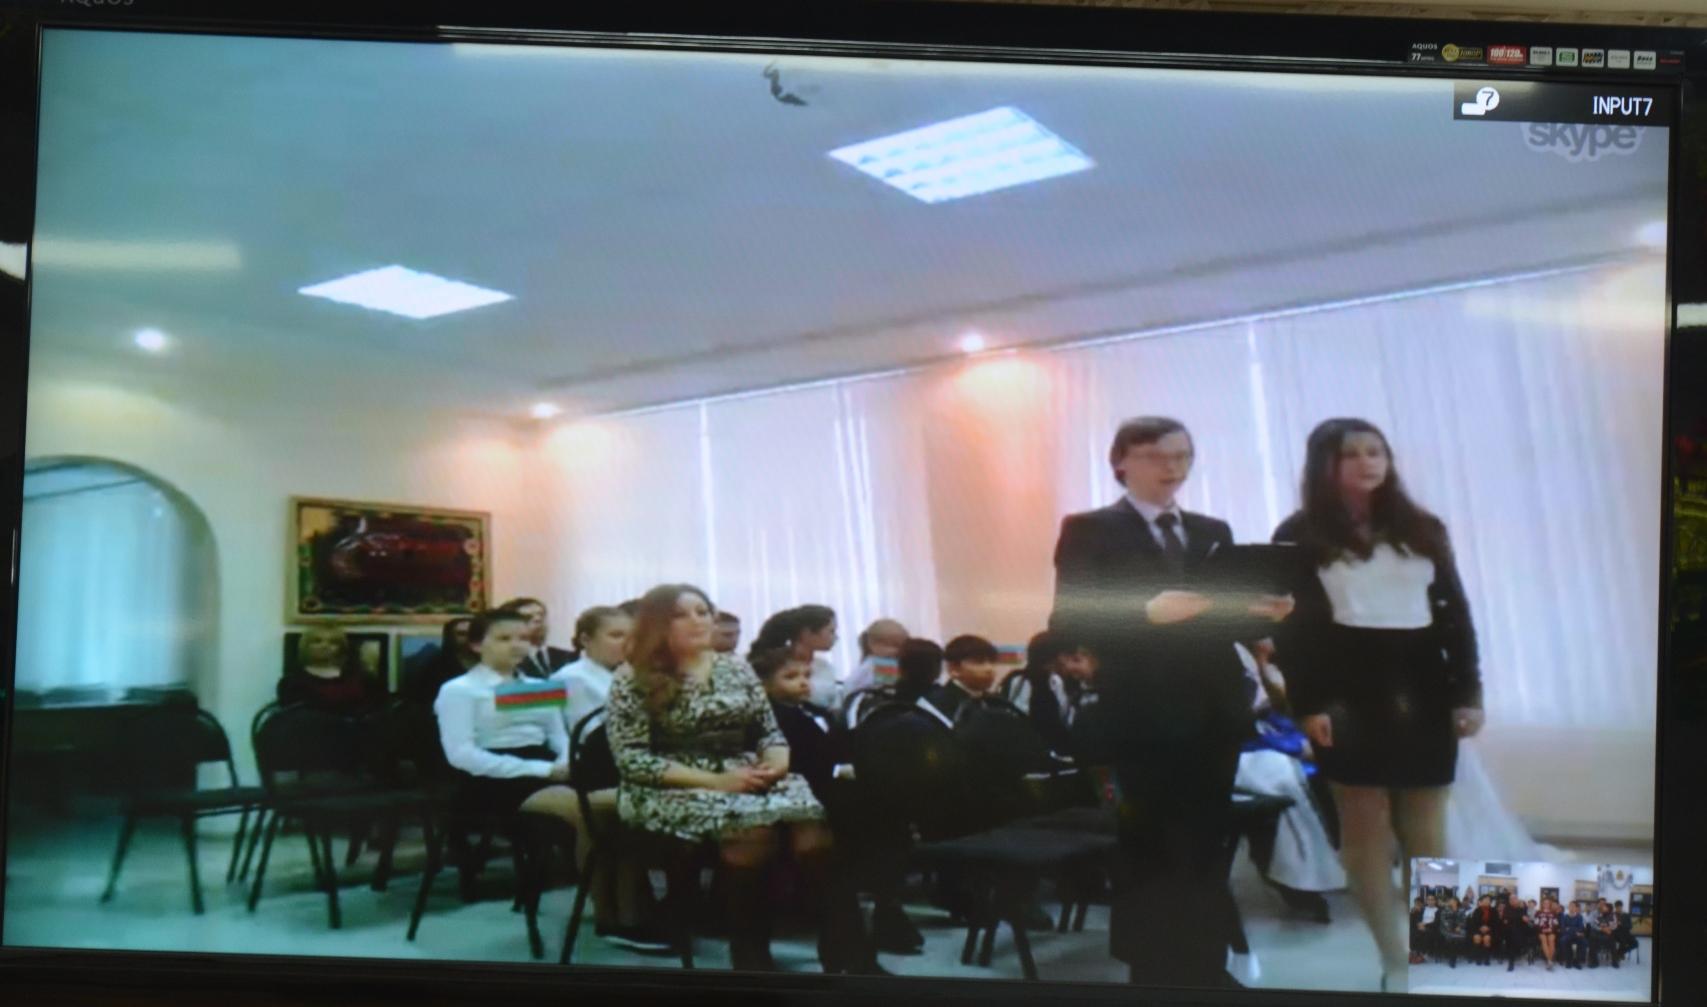 Российским школьникам рассказали об азербайджанском городе Габала (ФОТО)